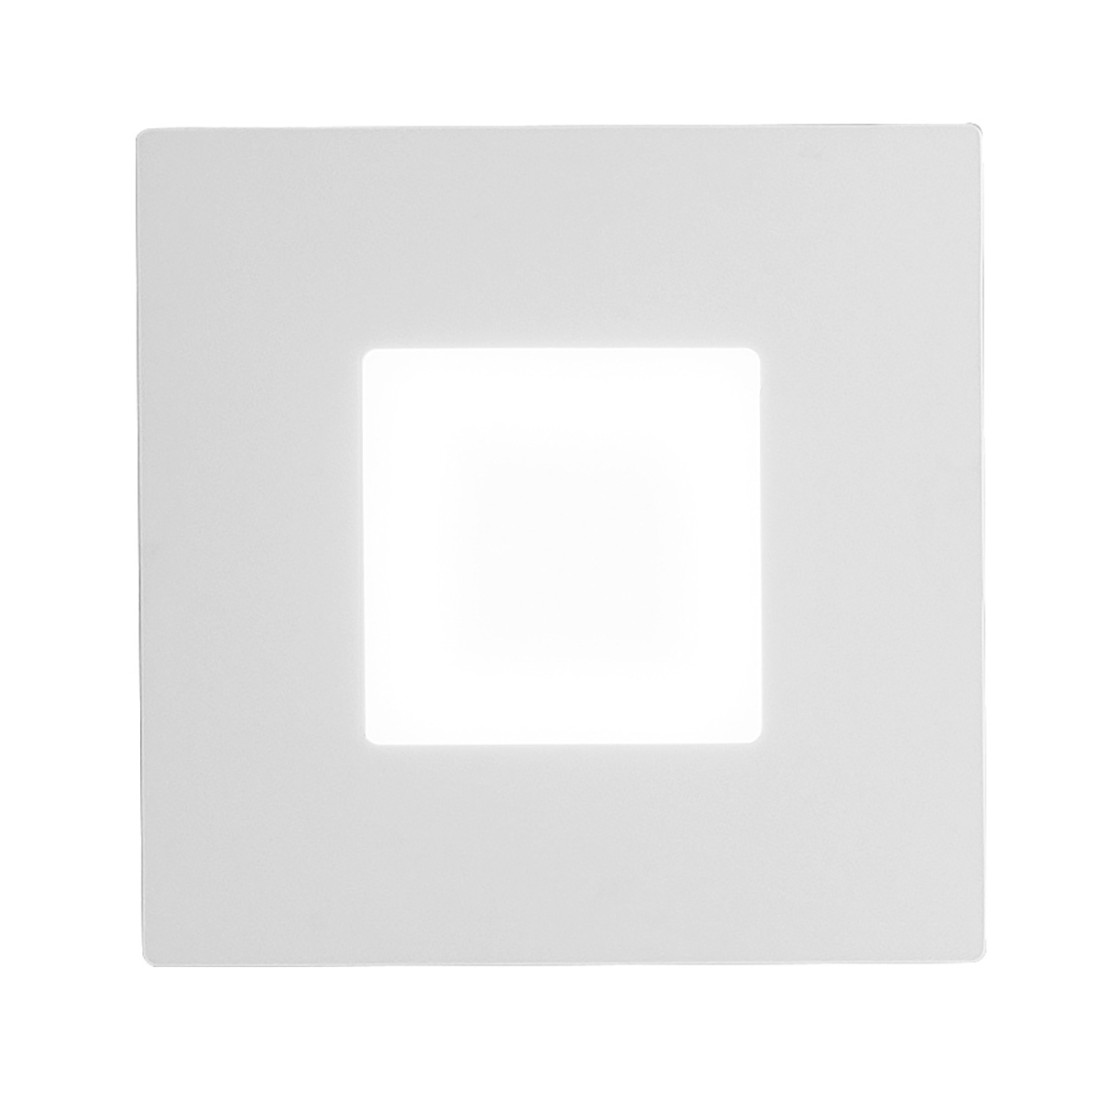 Plafonnier carré moderne en aluminium avec LED dimmable